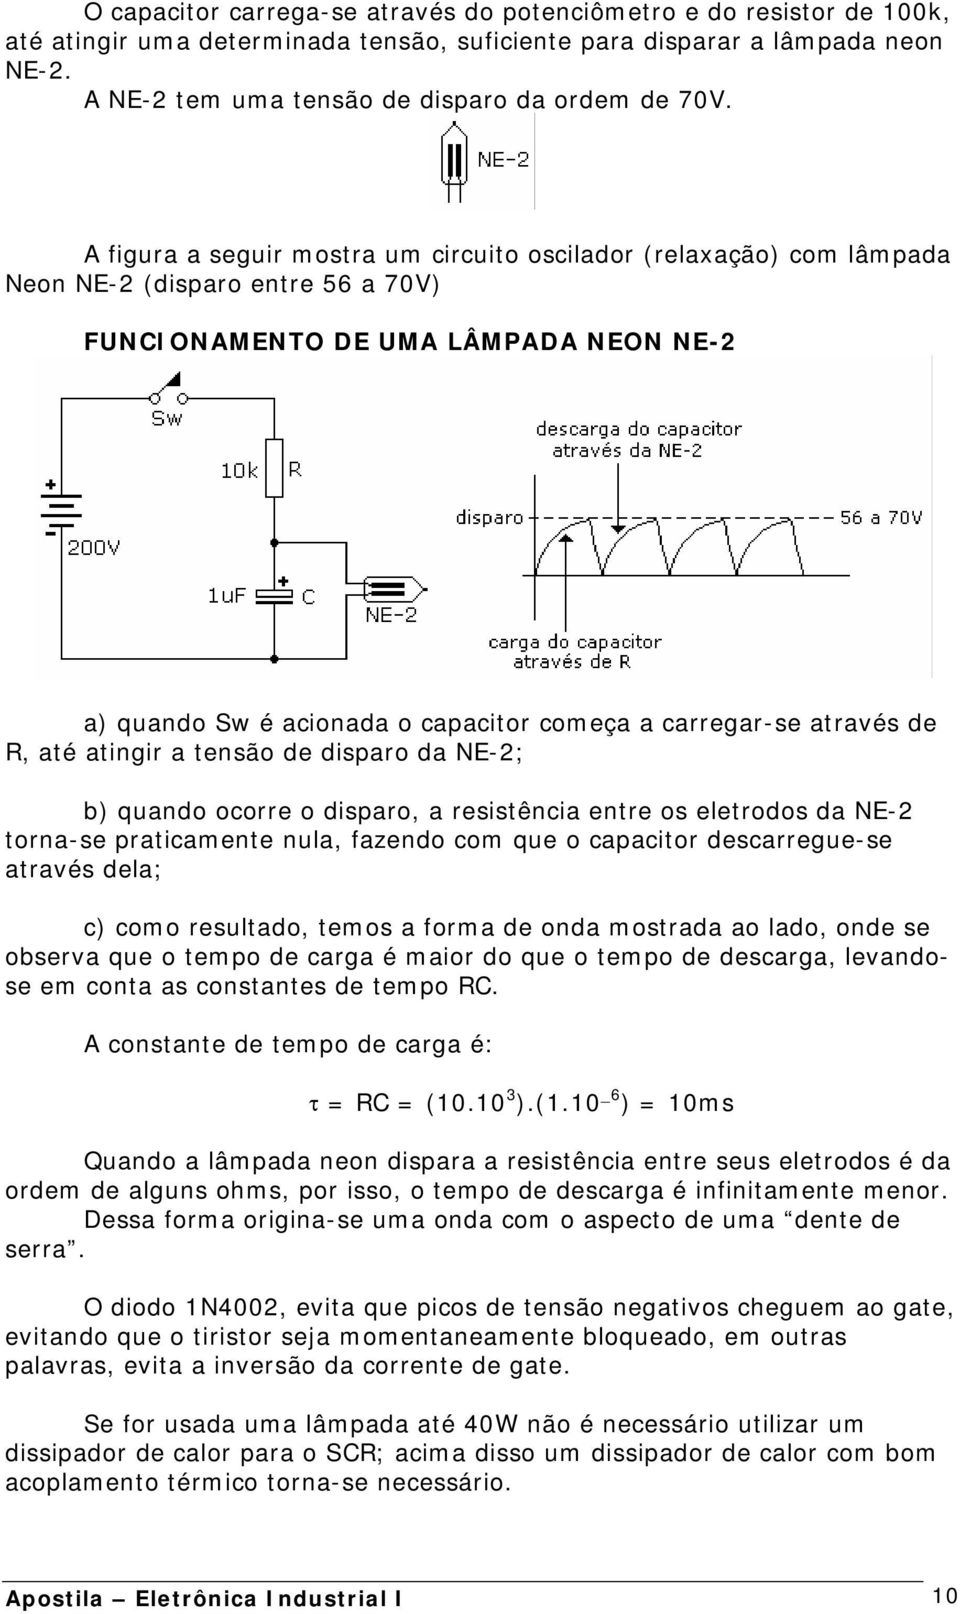 A figura a seguir mostra um circuito oscilador (relaxação) com lâmpada Neon NE-2 (disparo entre 56 a 70V) FUNCIONAMENTO DE UMA LÂMPADA NEON NE-2 a) quando Sw é acionada o capacitor começa a